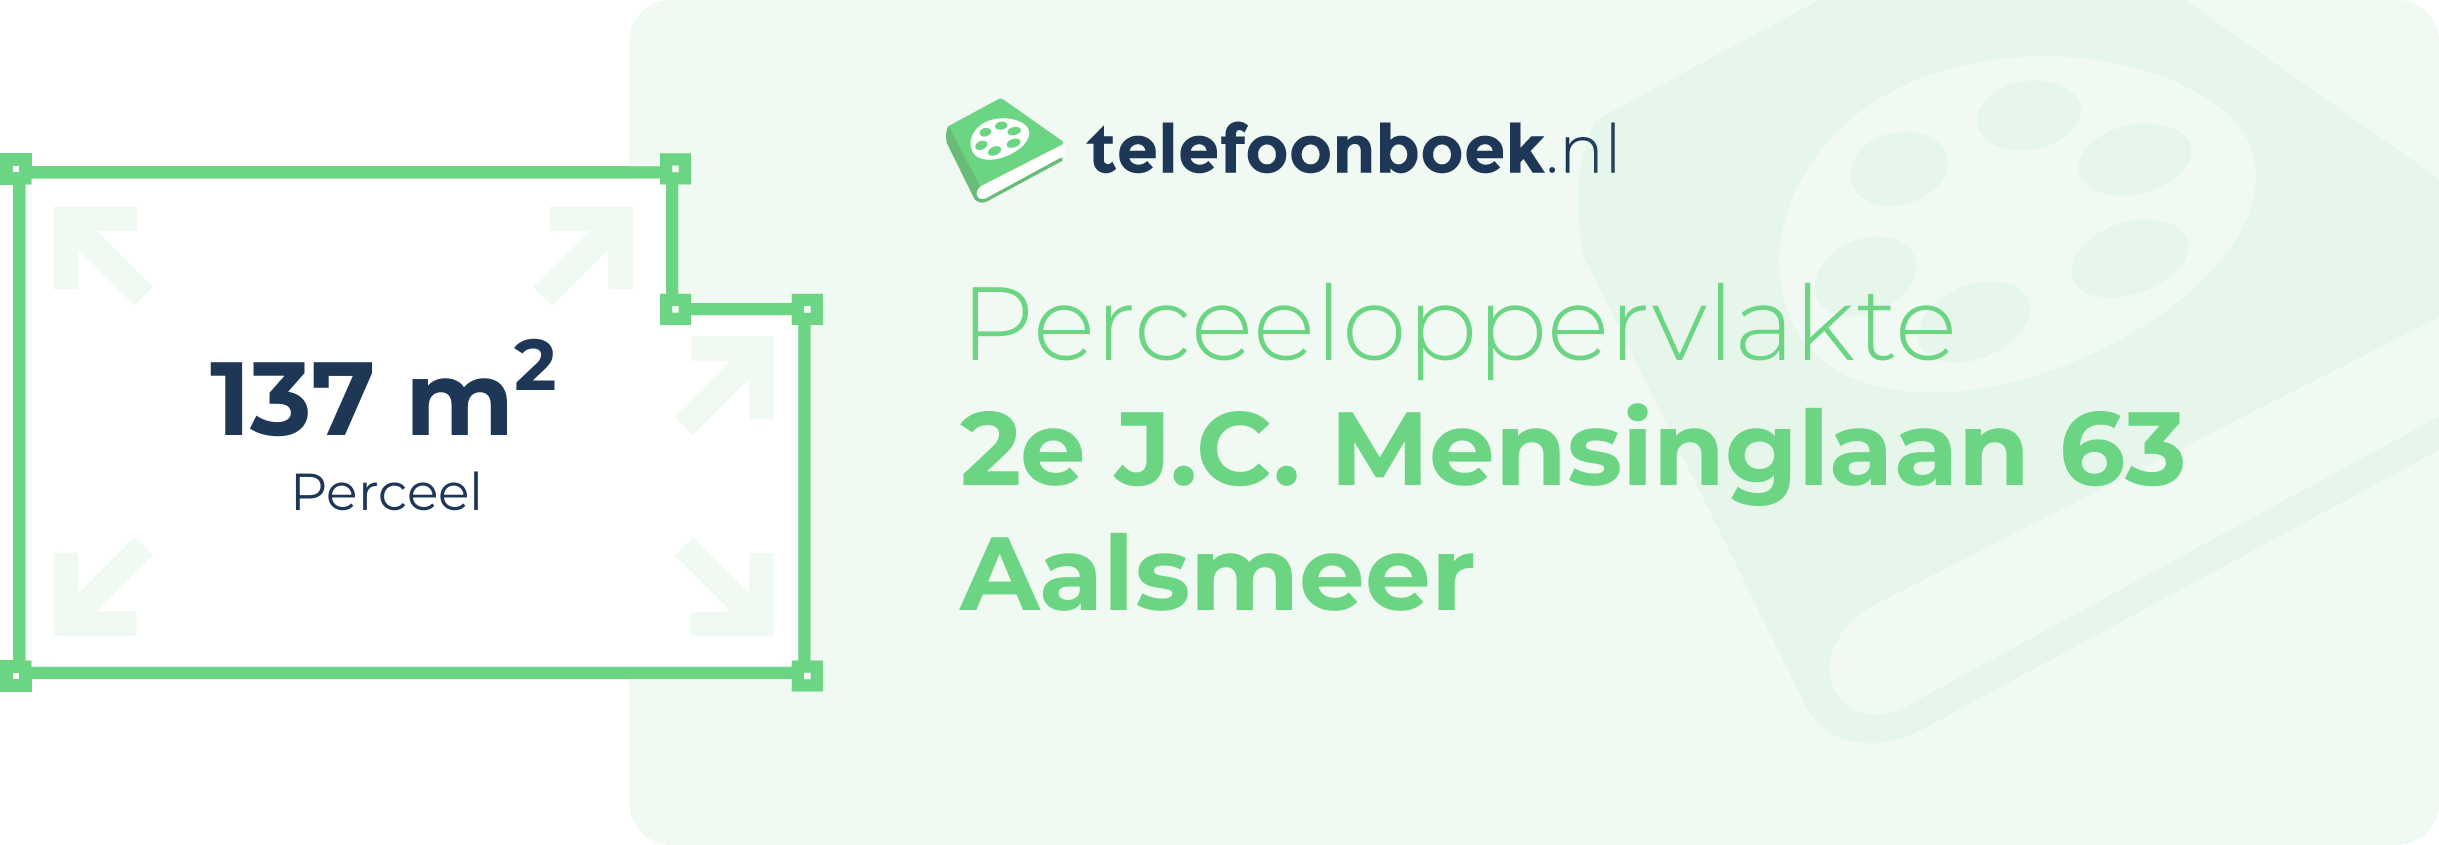 Perceeloppervlakte 2e J.C. Mensinglaan 63 Aalsmeer